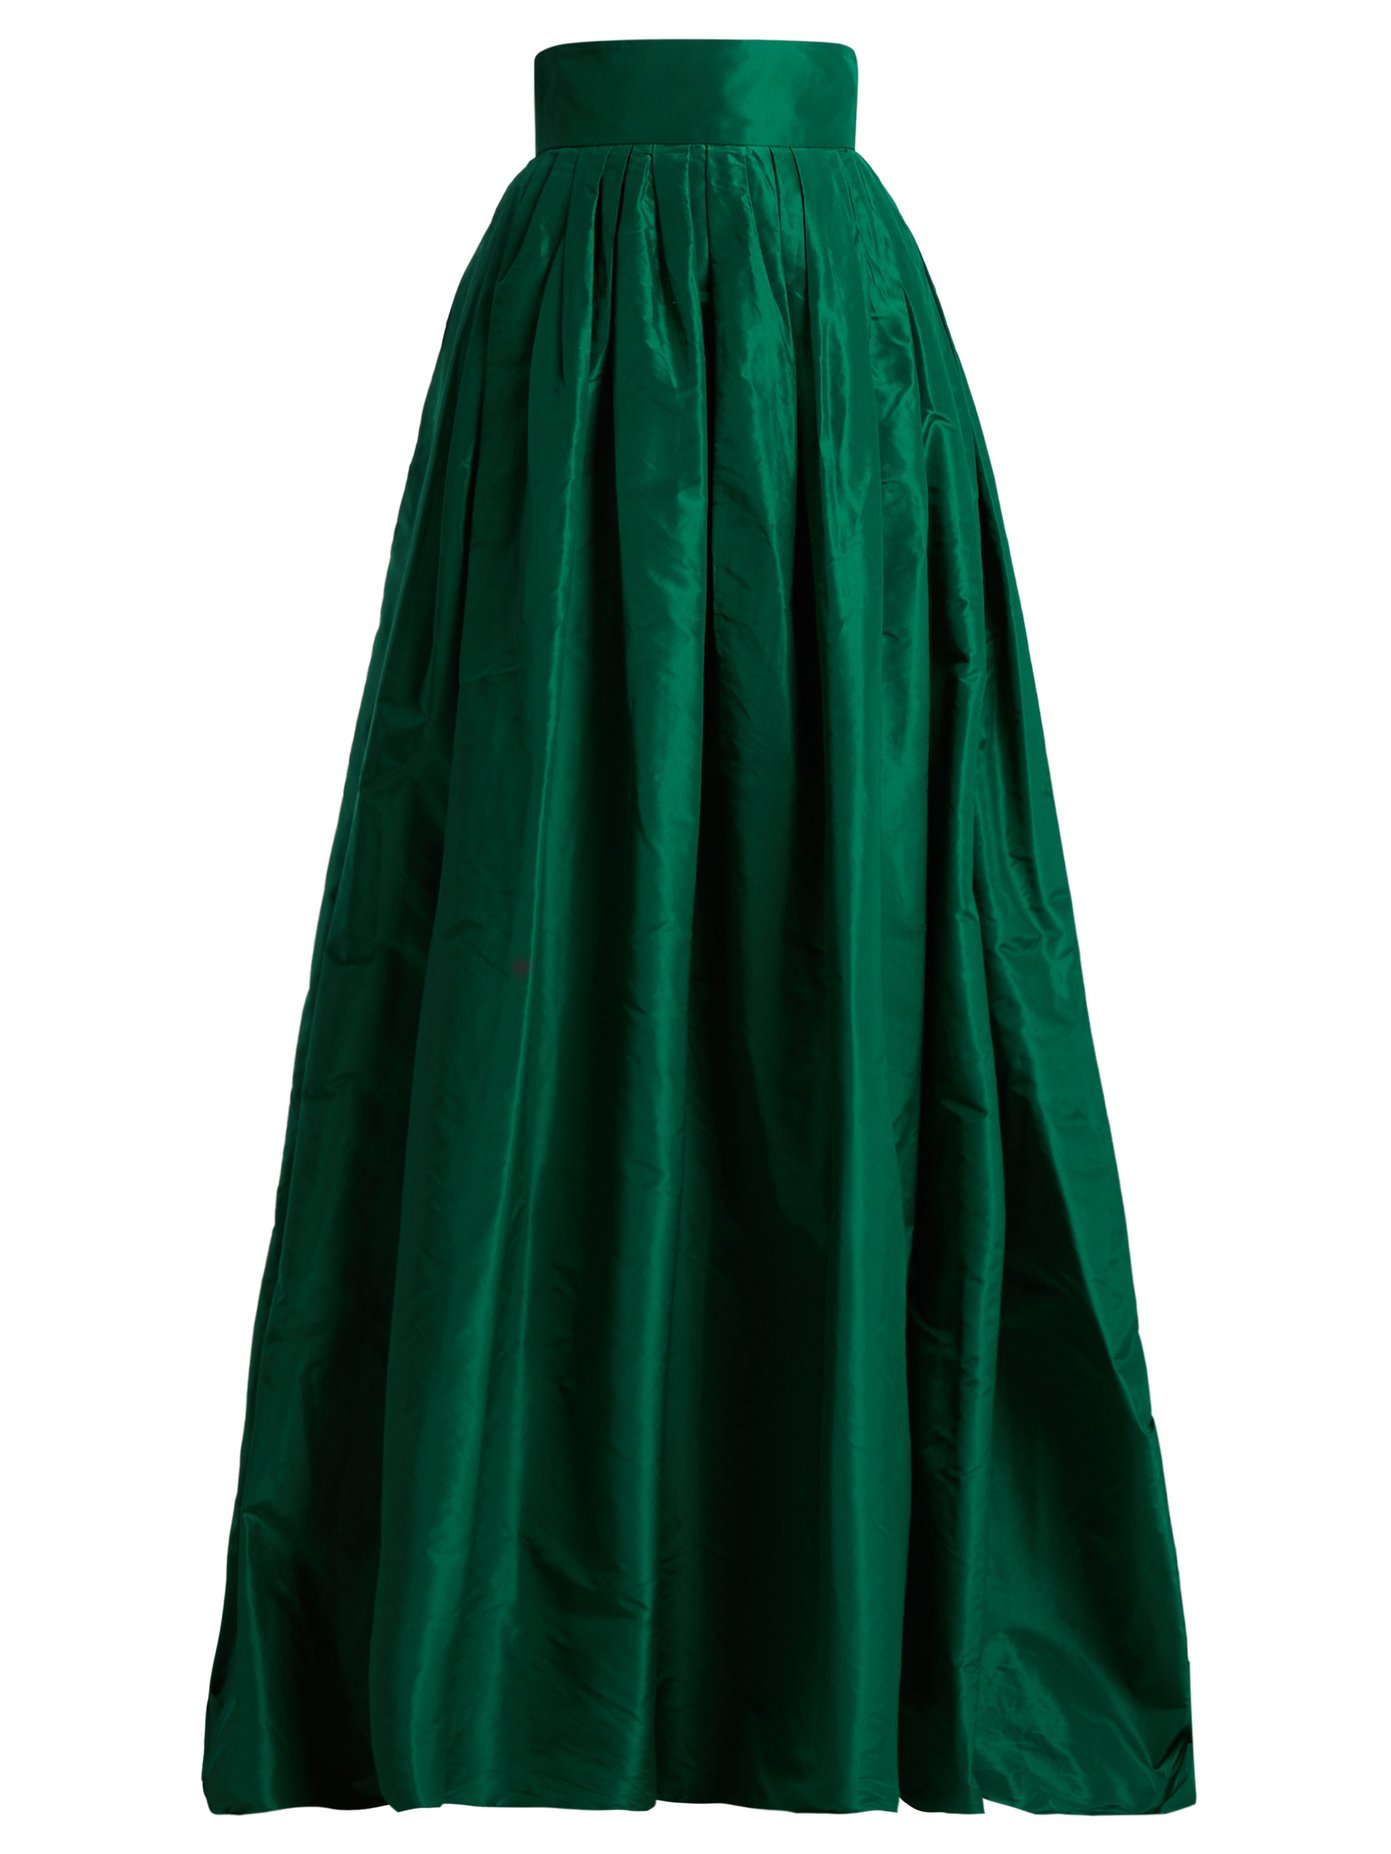 green ball gown skirt